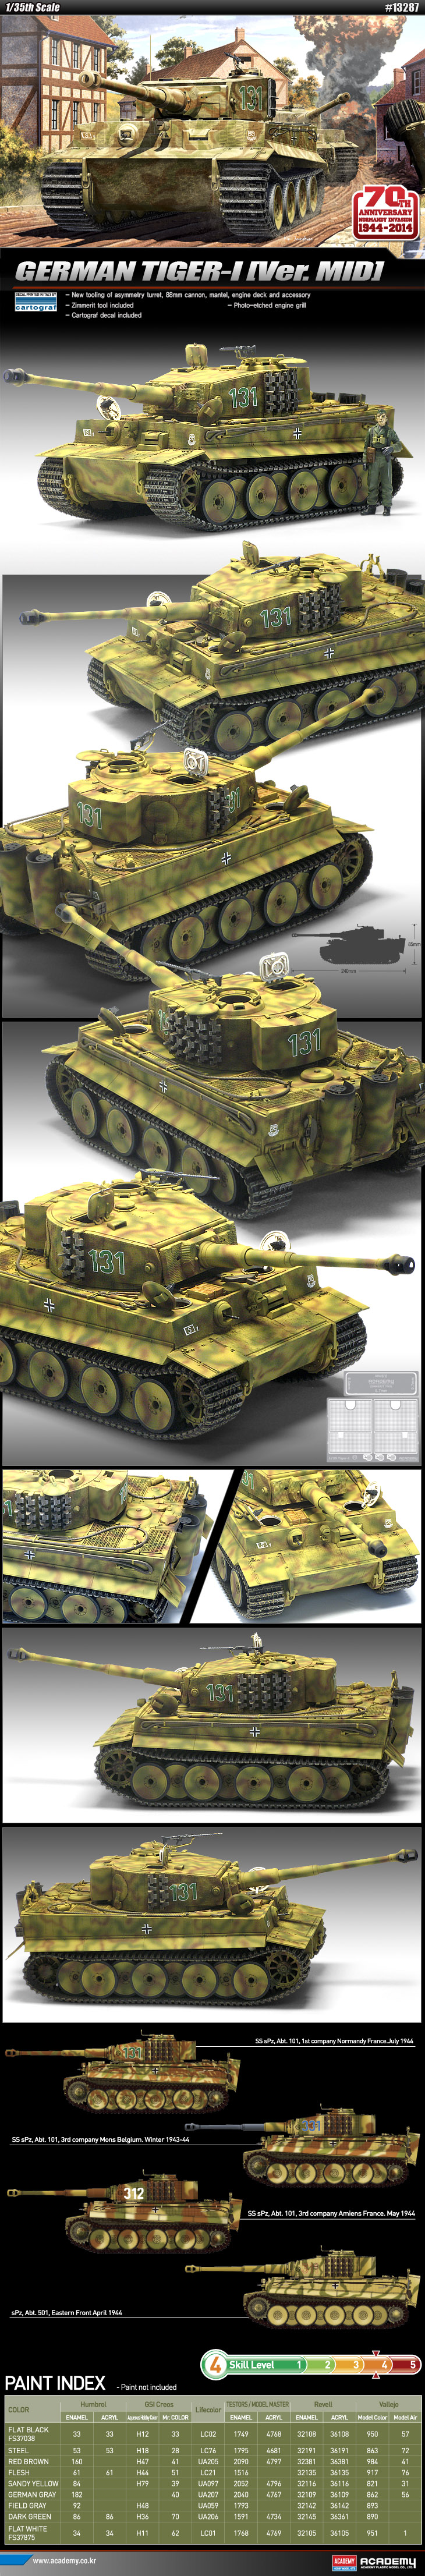 ドイツ 重戦車 ティーガー I 中期 生産型 - アカデミー 13287